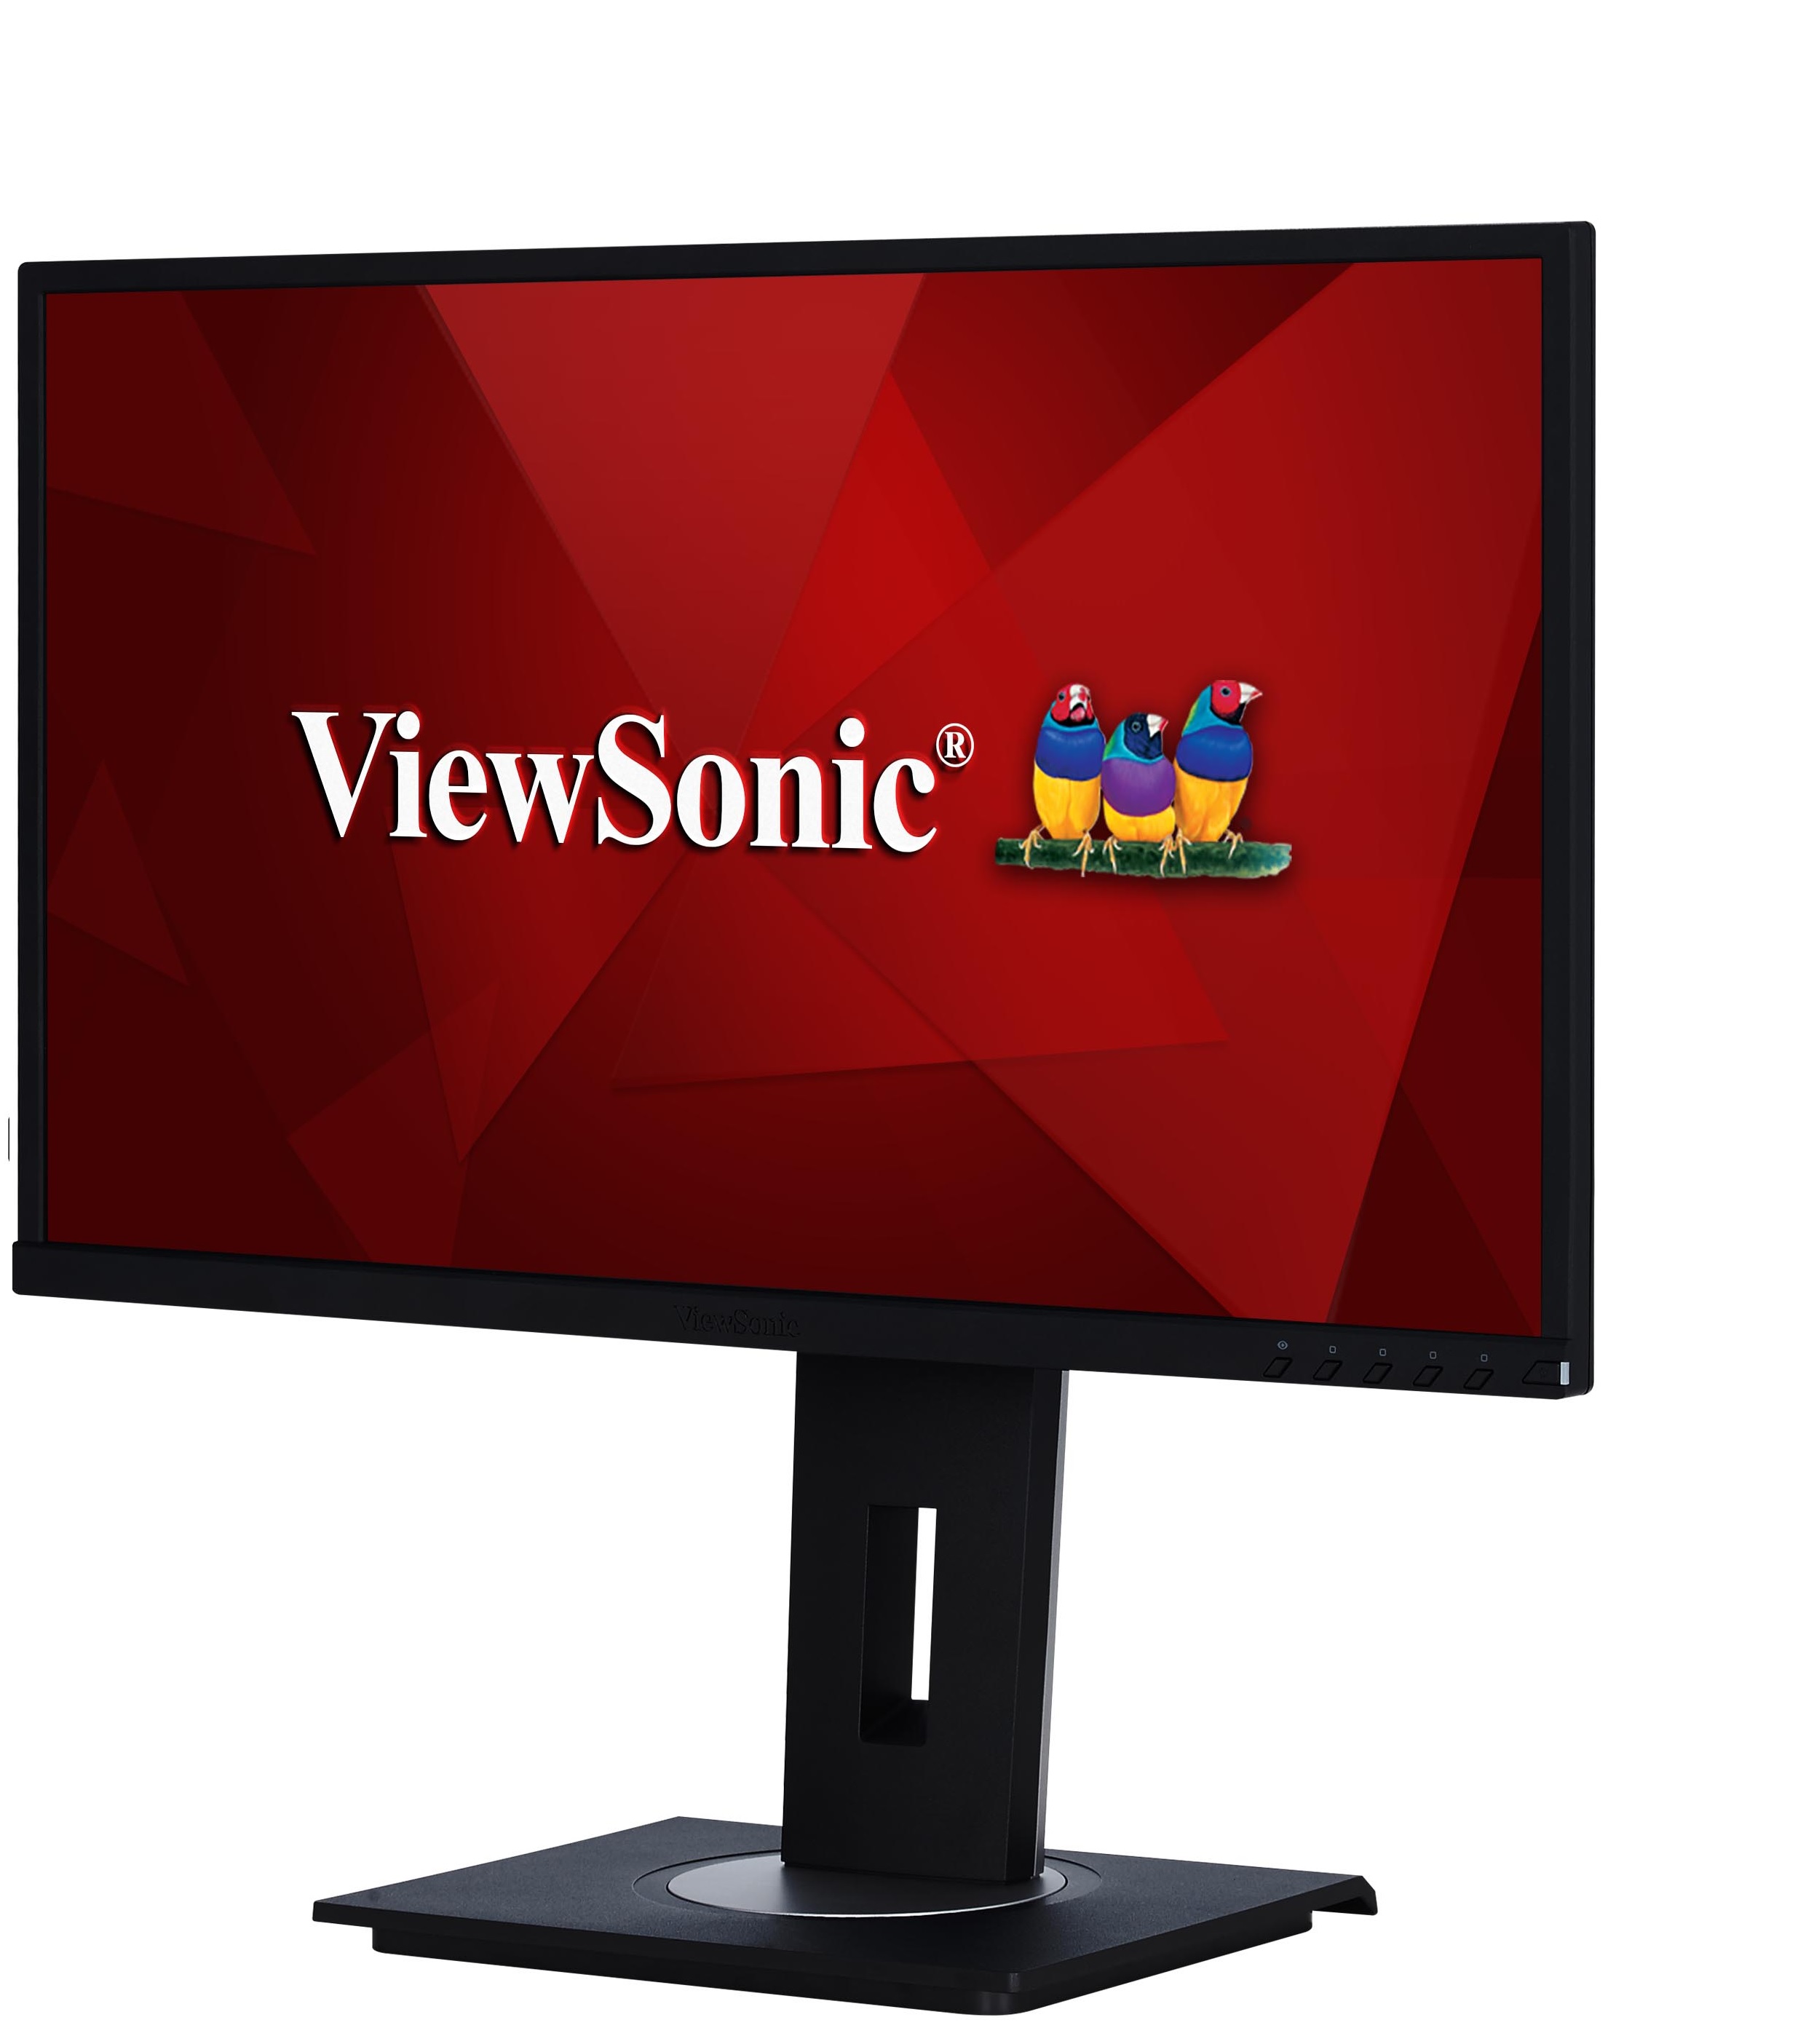 Monitor LCD Ajustable 24'' / ViewSonic VG2448 | Panel IPS, FHD 1920 x 1080, 16: 9, HDMI, VGA, DisplayPort, USB, Brillo 250 cd/m2, 178°/178°, Peso: 5.81 kg. 3 años